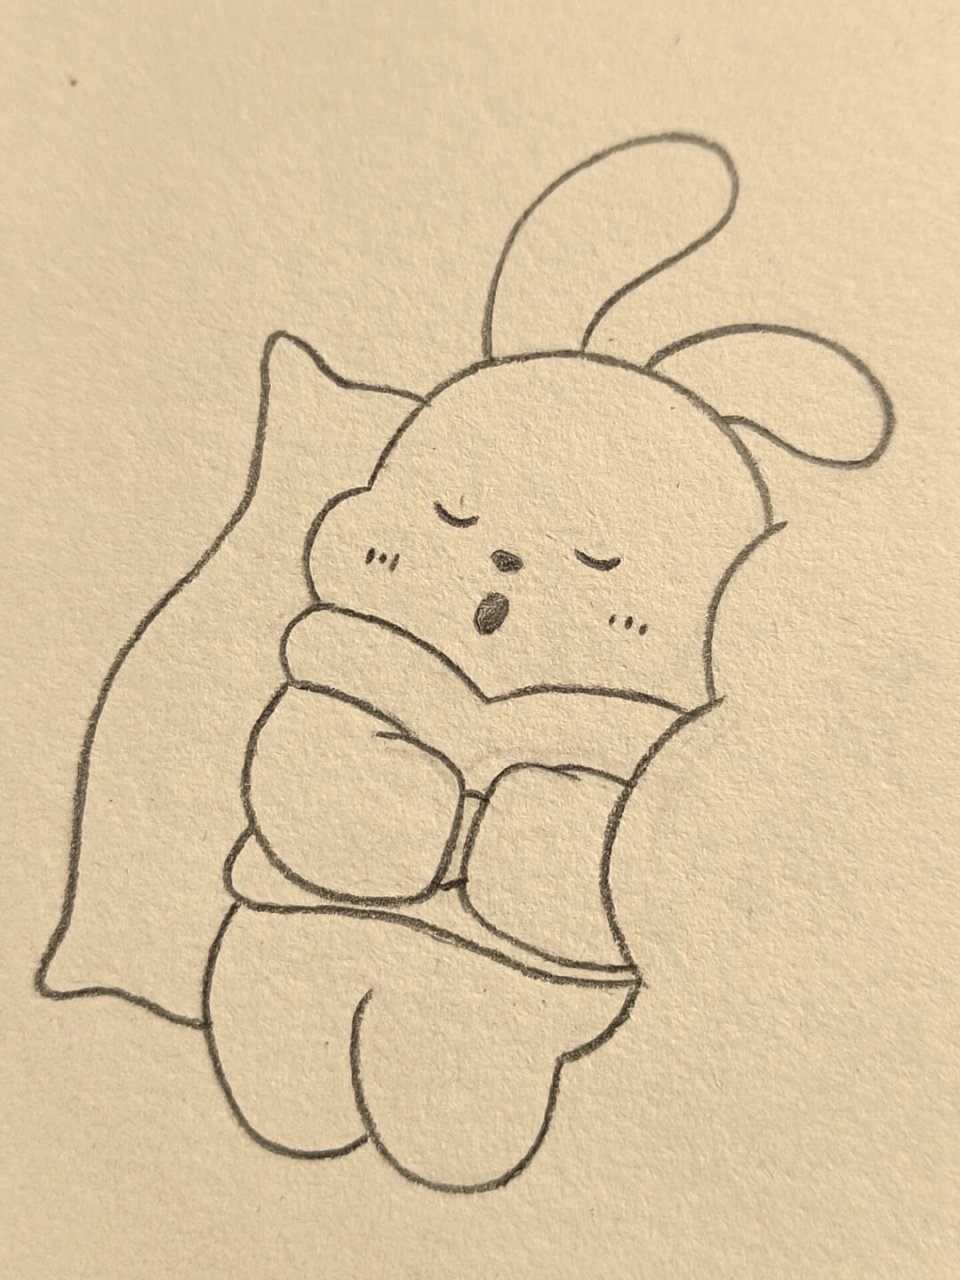 小兔子睡觉的简笔画图片